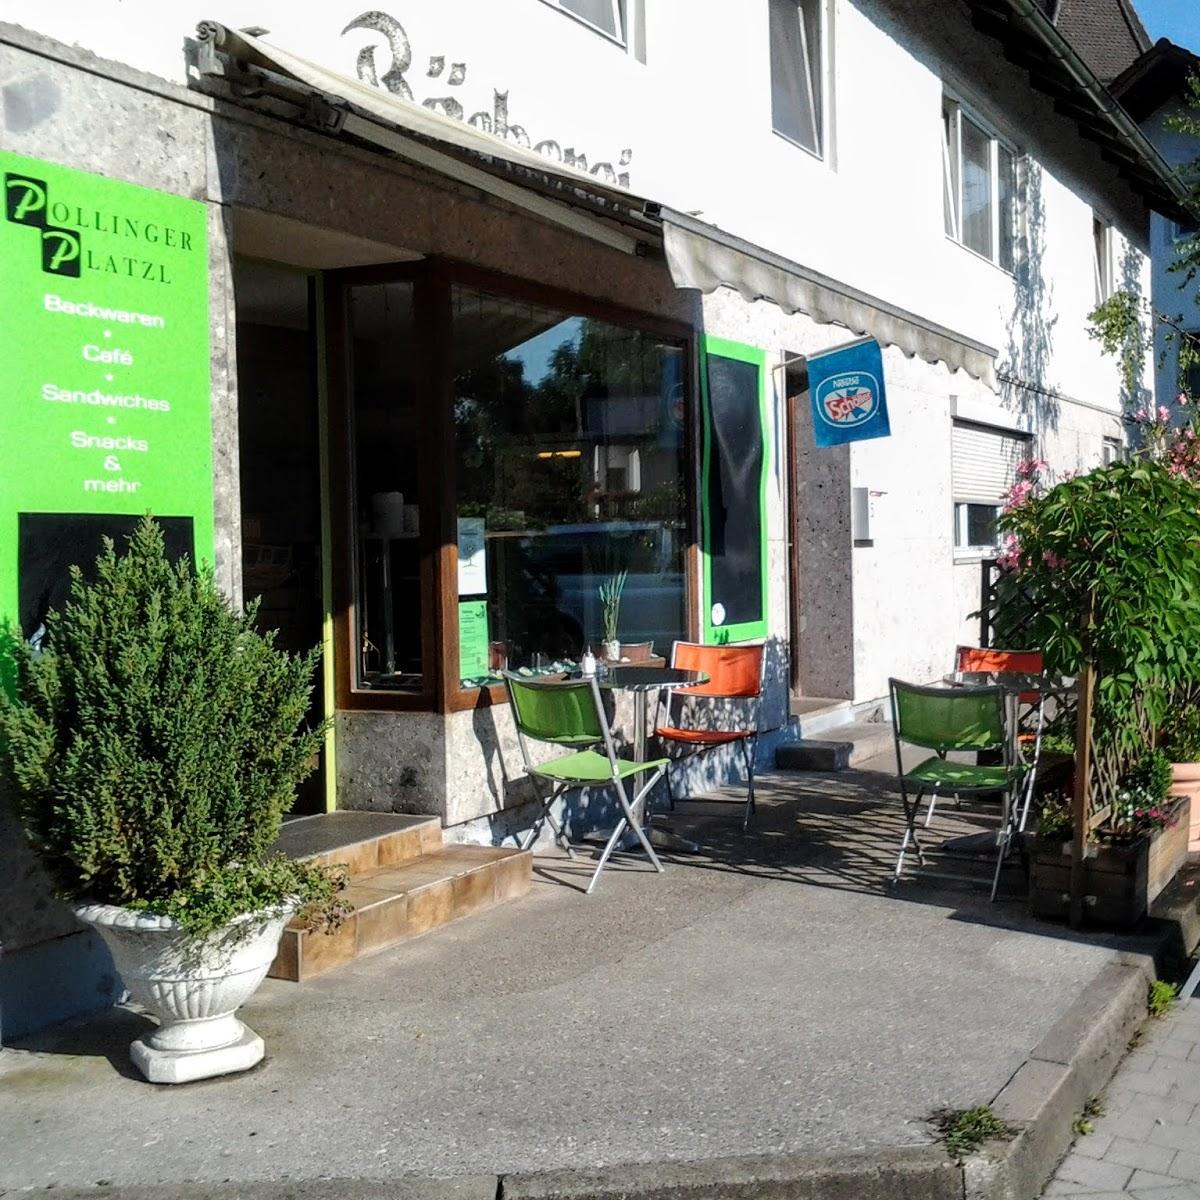 Restaurant "er Platzl Backwaren&Lebensmittel" in  Polling